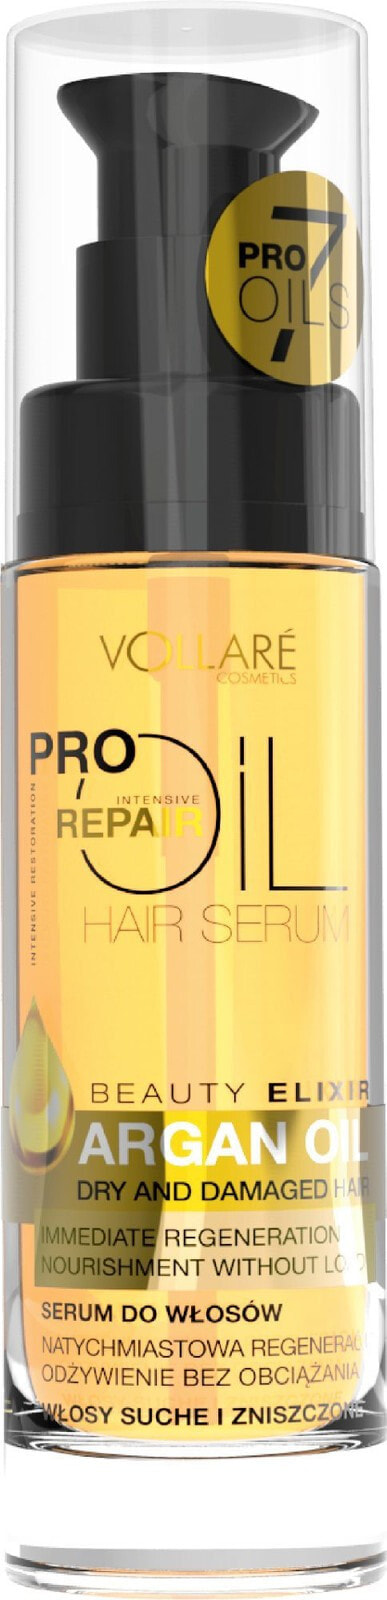 Vollare Pro Oils Intensive Repair Serum Интенсивно восстанавливающая сыворотка с аргановым маслом  30 мл